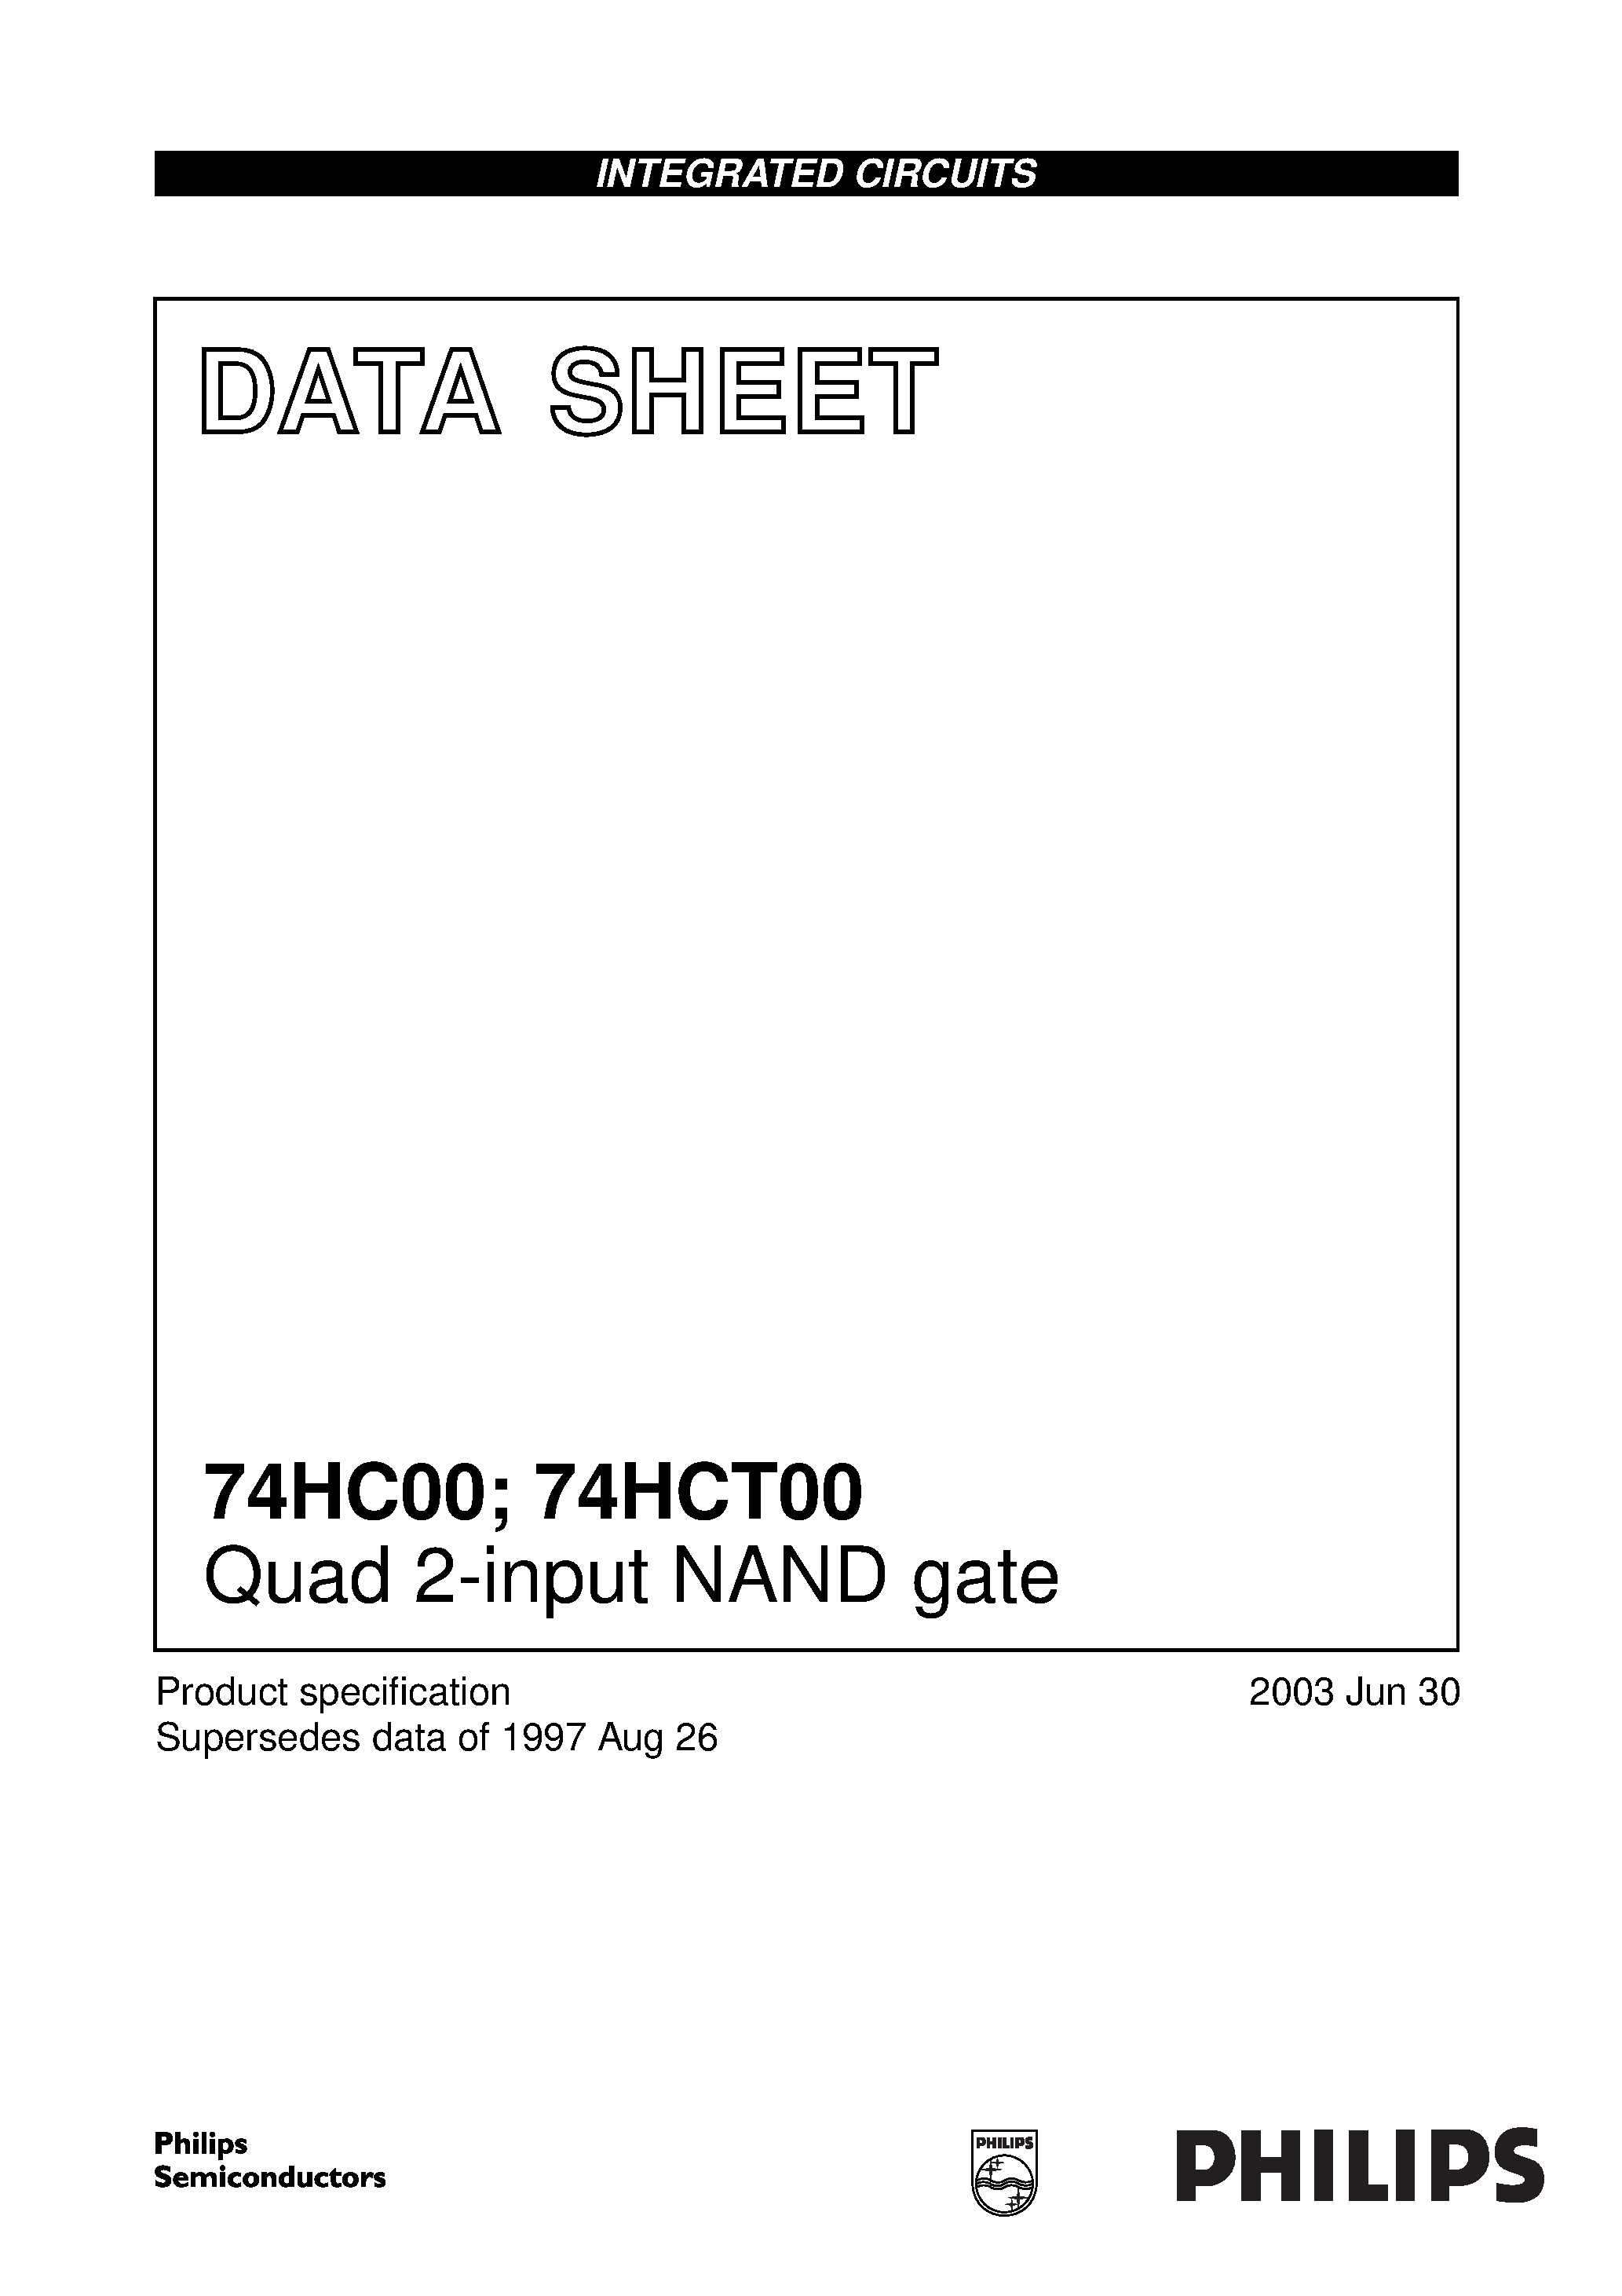 Даташит 74HC00N - Quad 2-input NAND gate страница 1